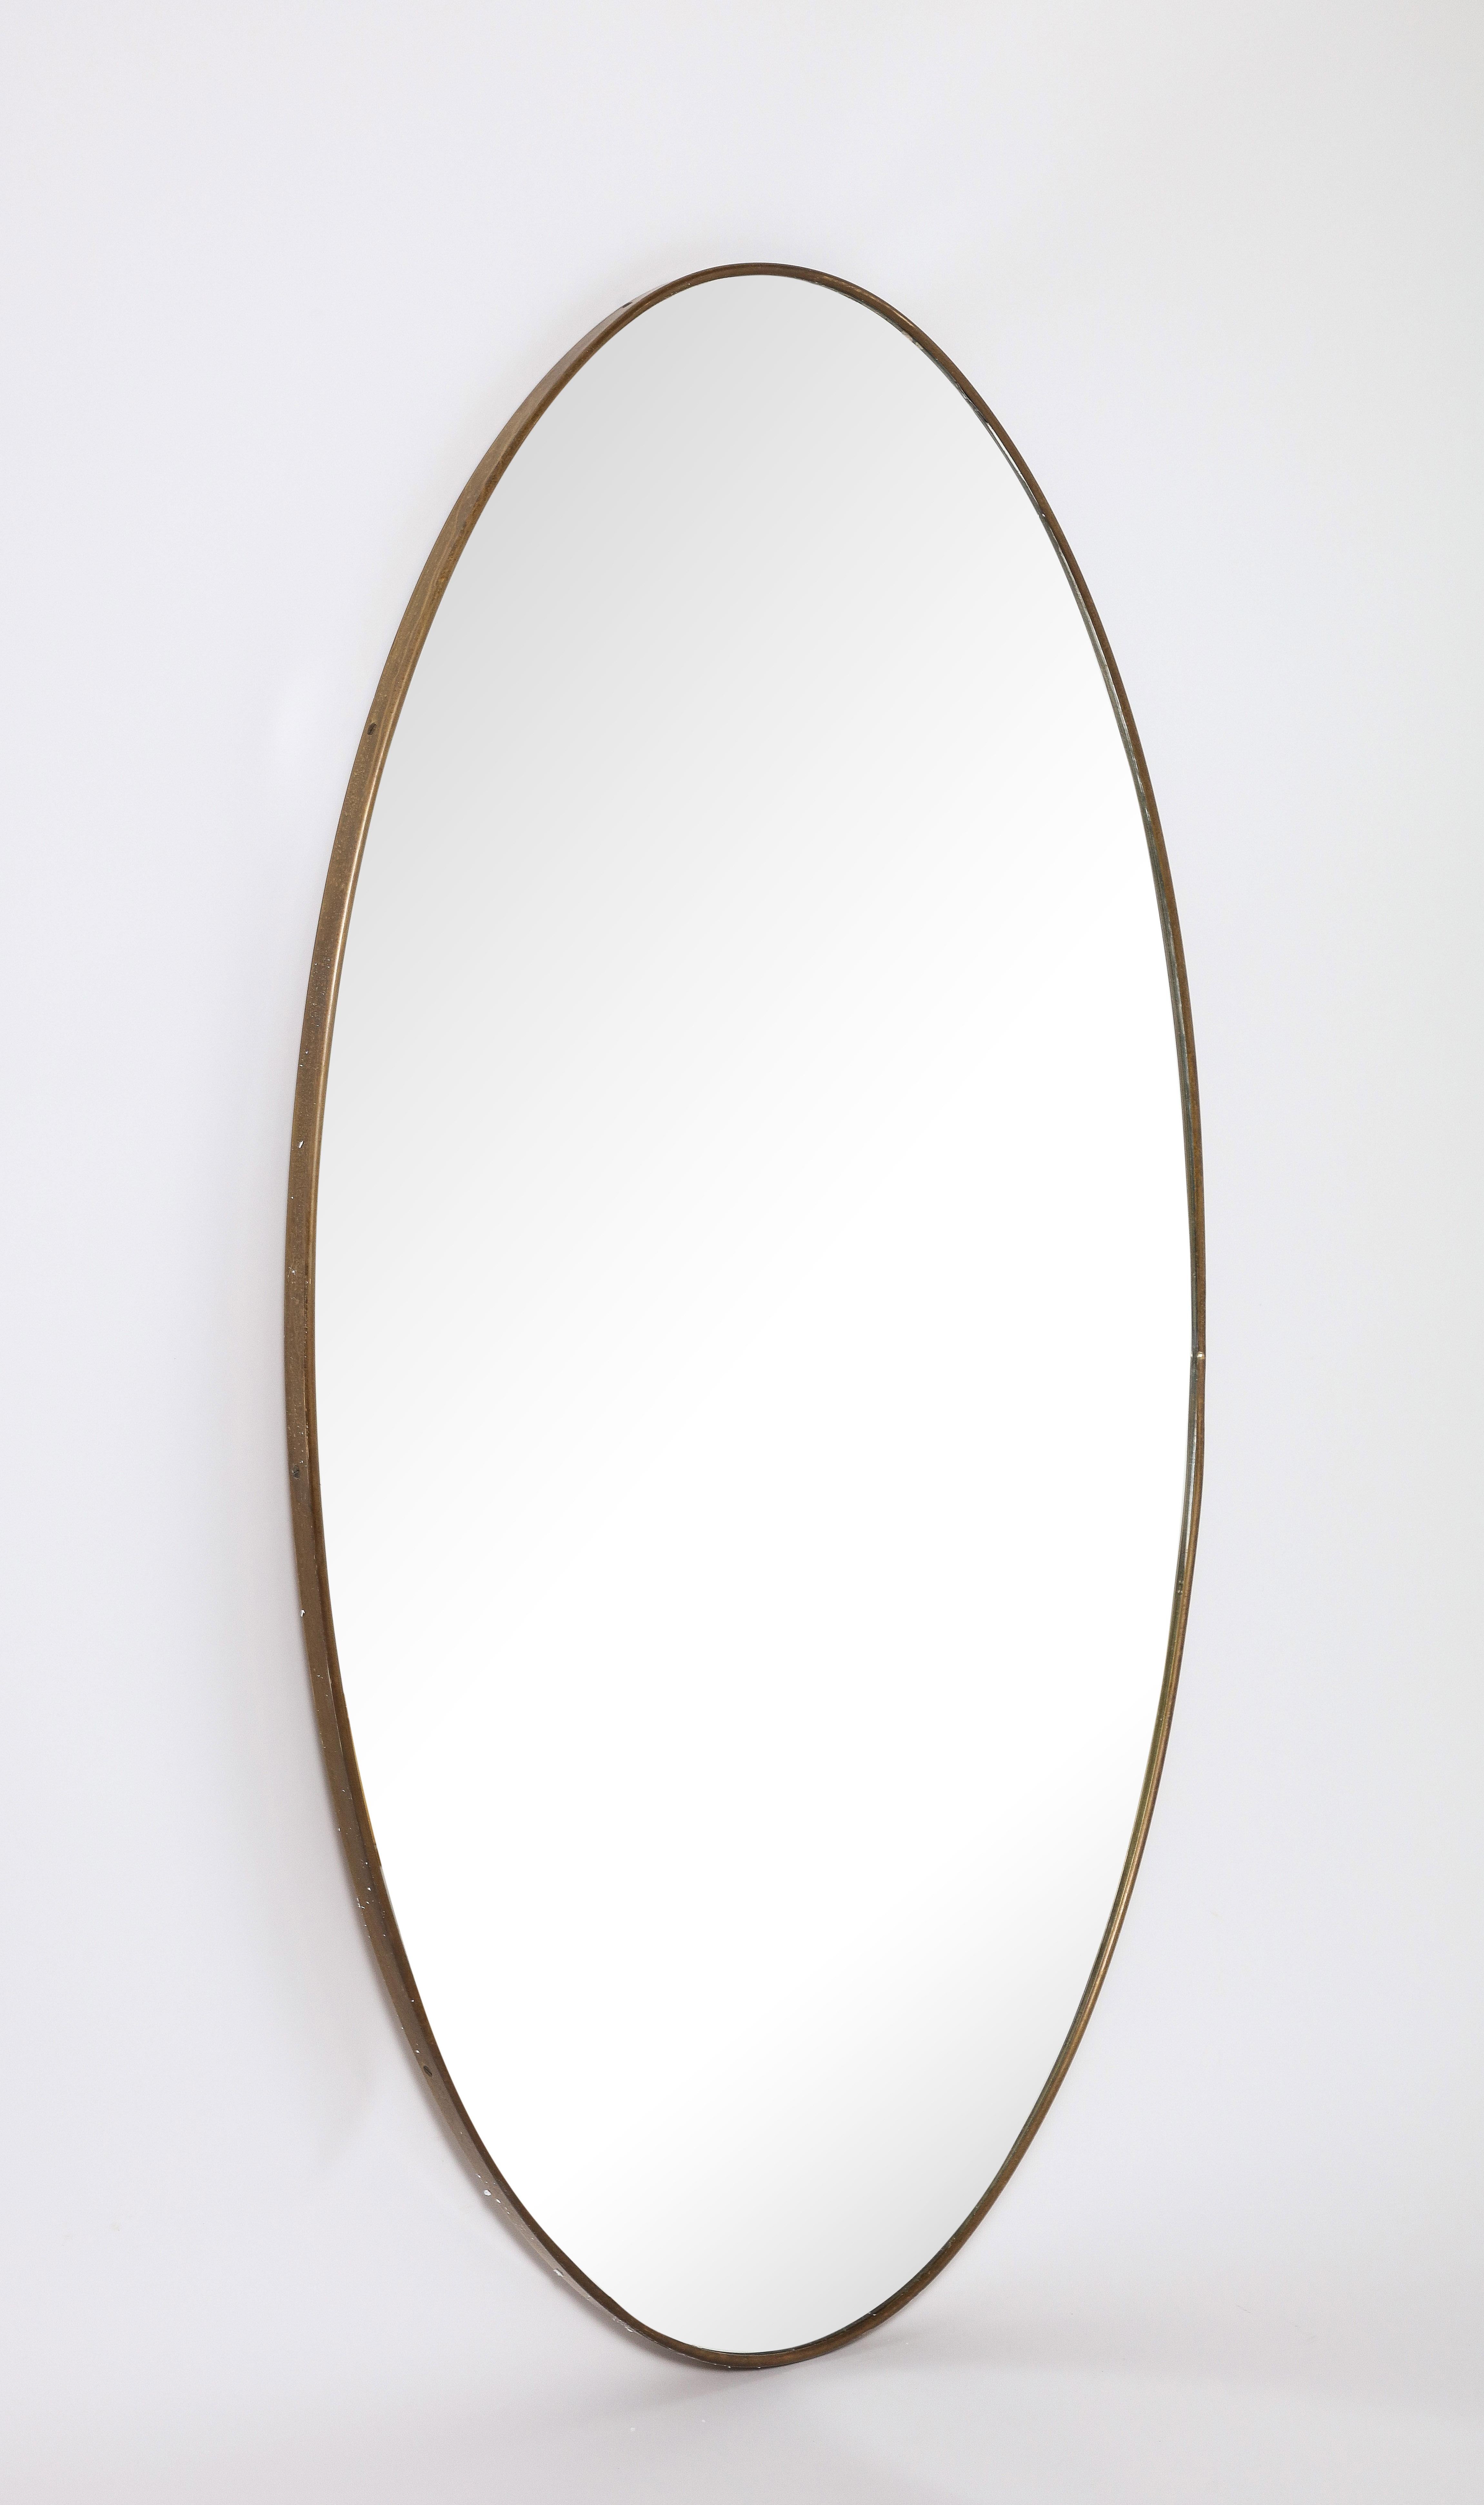 Miroir italien moderniste ovale en laiton de grande taille ; une forme merveilleuse, le laiton avec une patine d'origine chaude et riche. Plaque de verre miroir originale. 
Italie, vers 1950 
Taille : 49